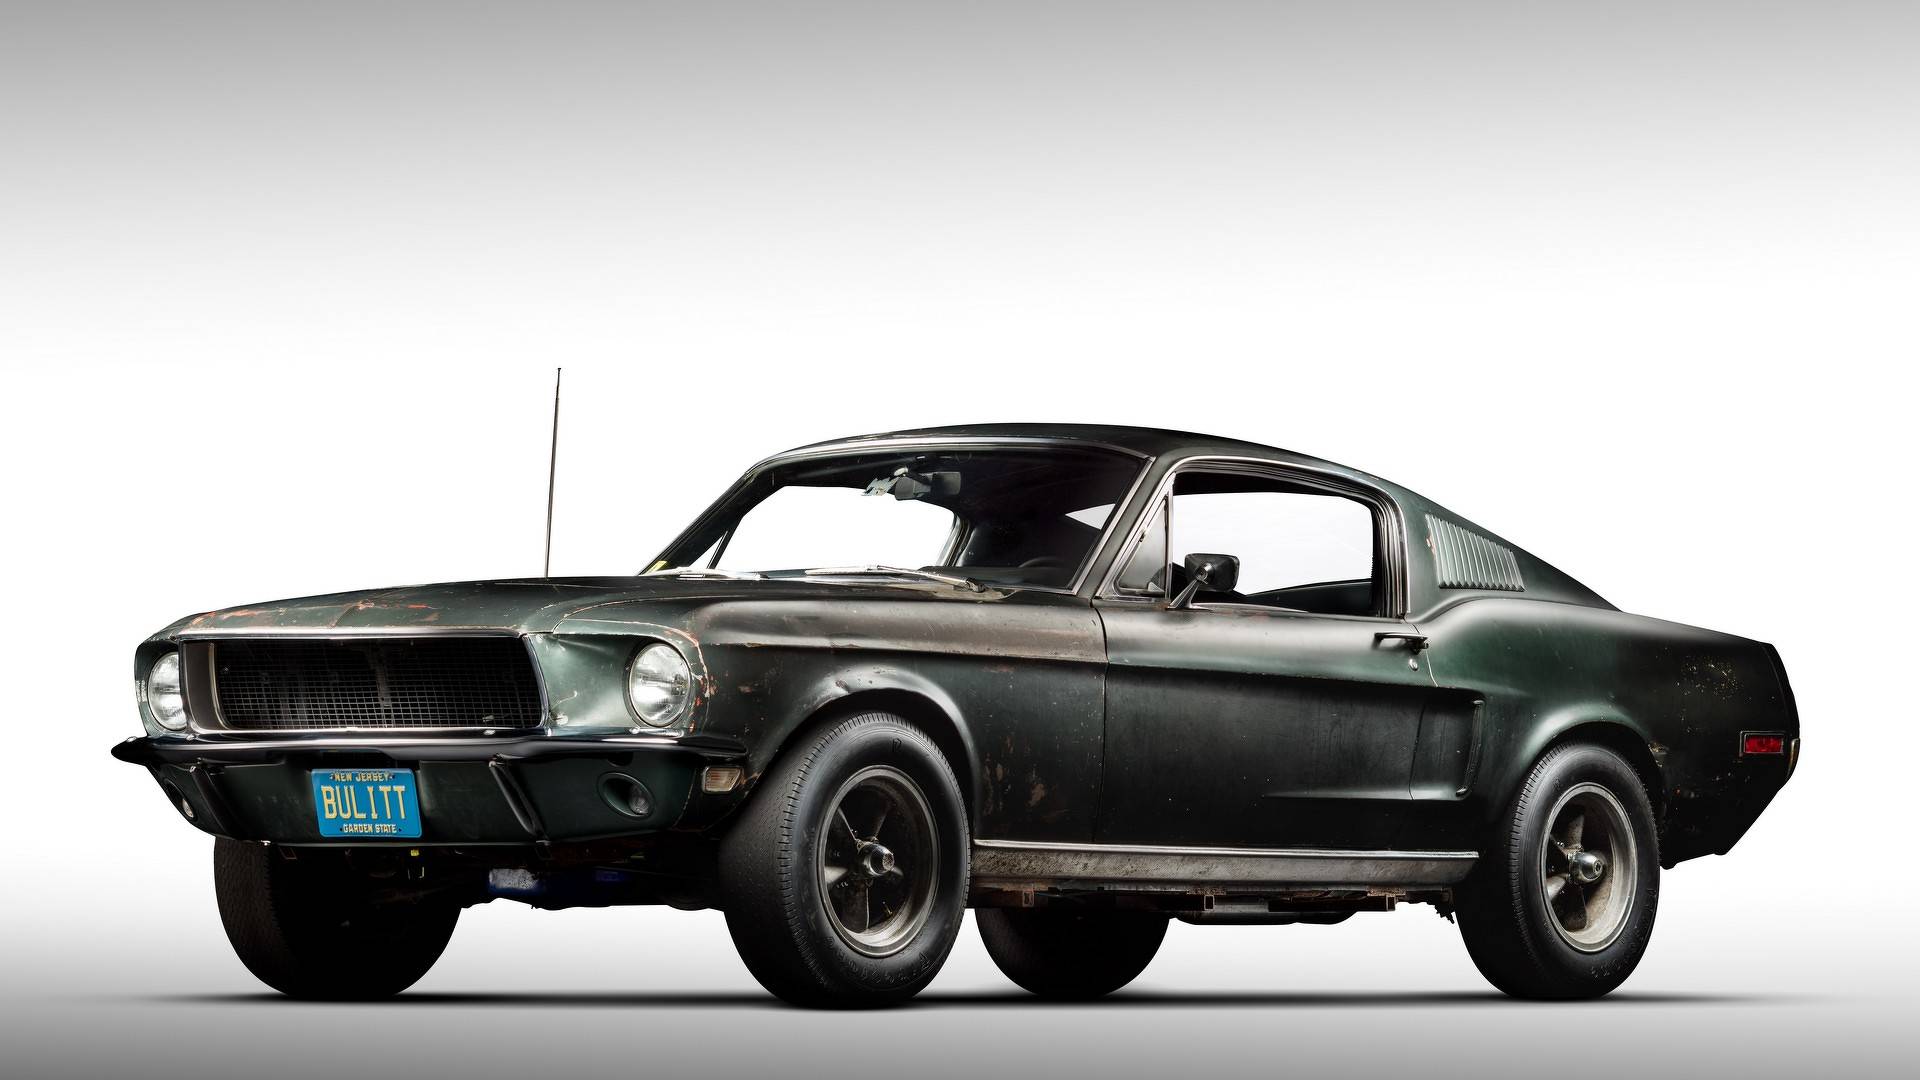 Original Mustang From Bullitt Added To Historic Vehicle Register